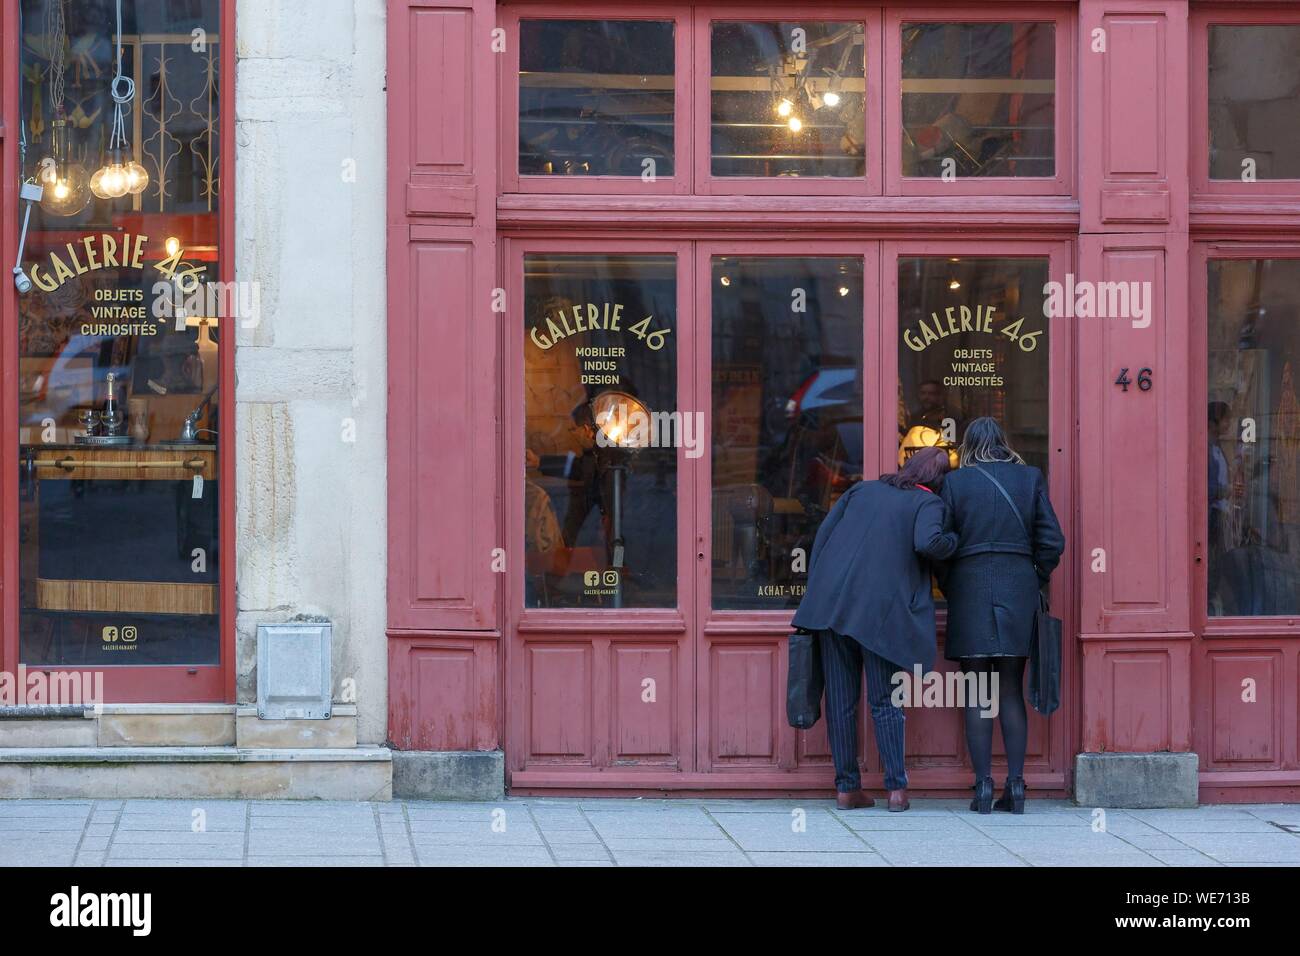 Francia, Meurthe et Moselle, Nancy, el escaparate de una tienda Galerie 46 antic en grande grande rue (calle). Foto de stock